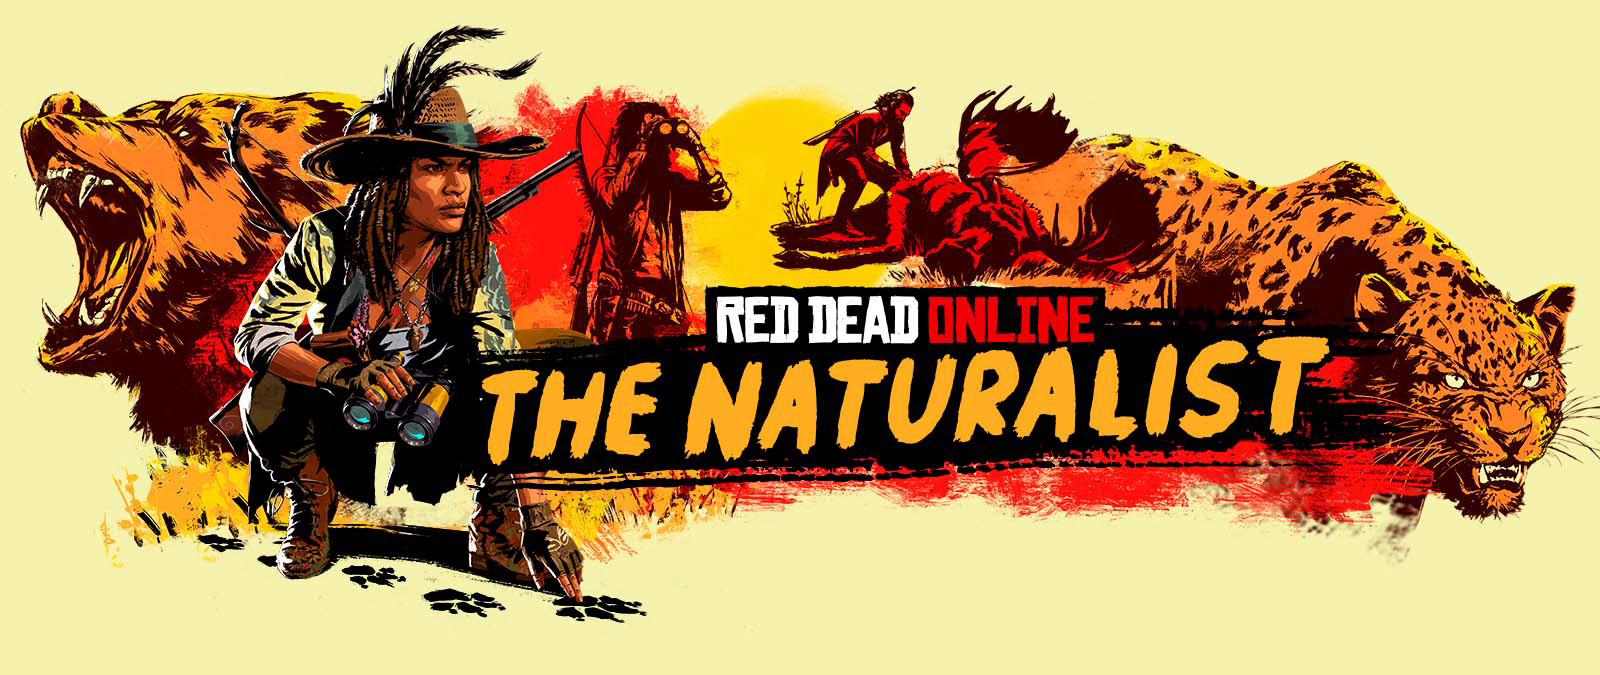 Red Dead Online. Naturforskaren. Tecken spårning och jakt på stora djur